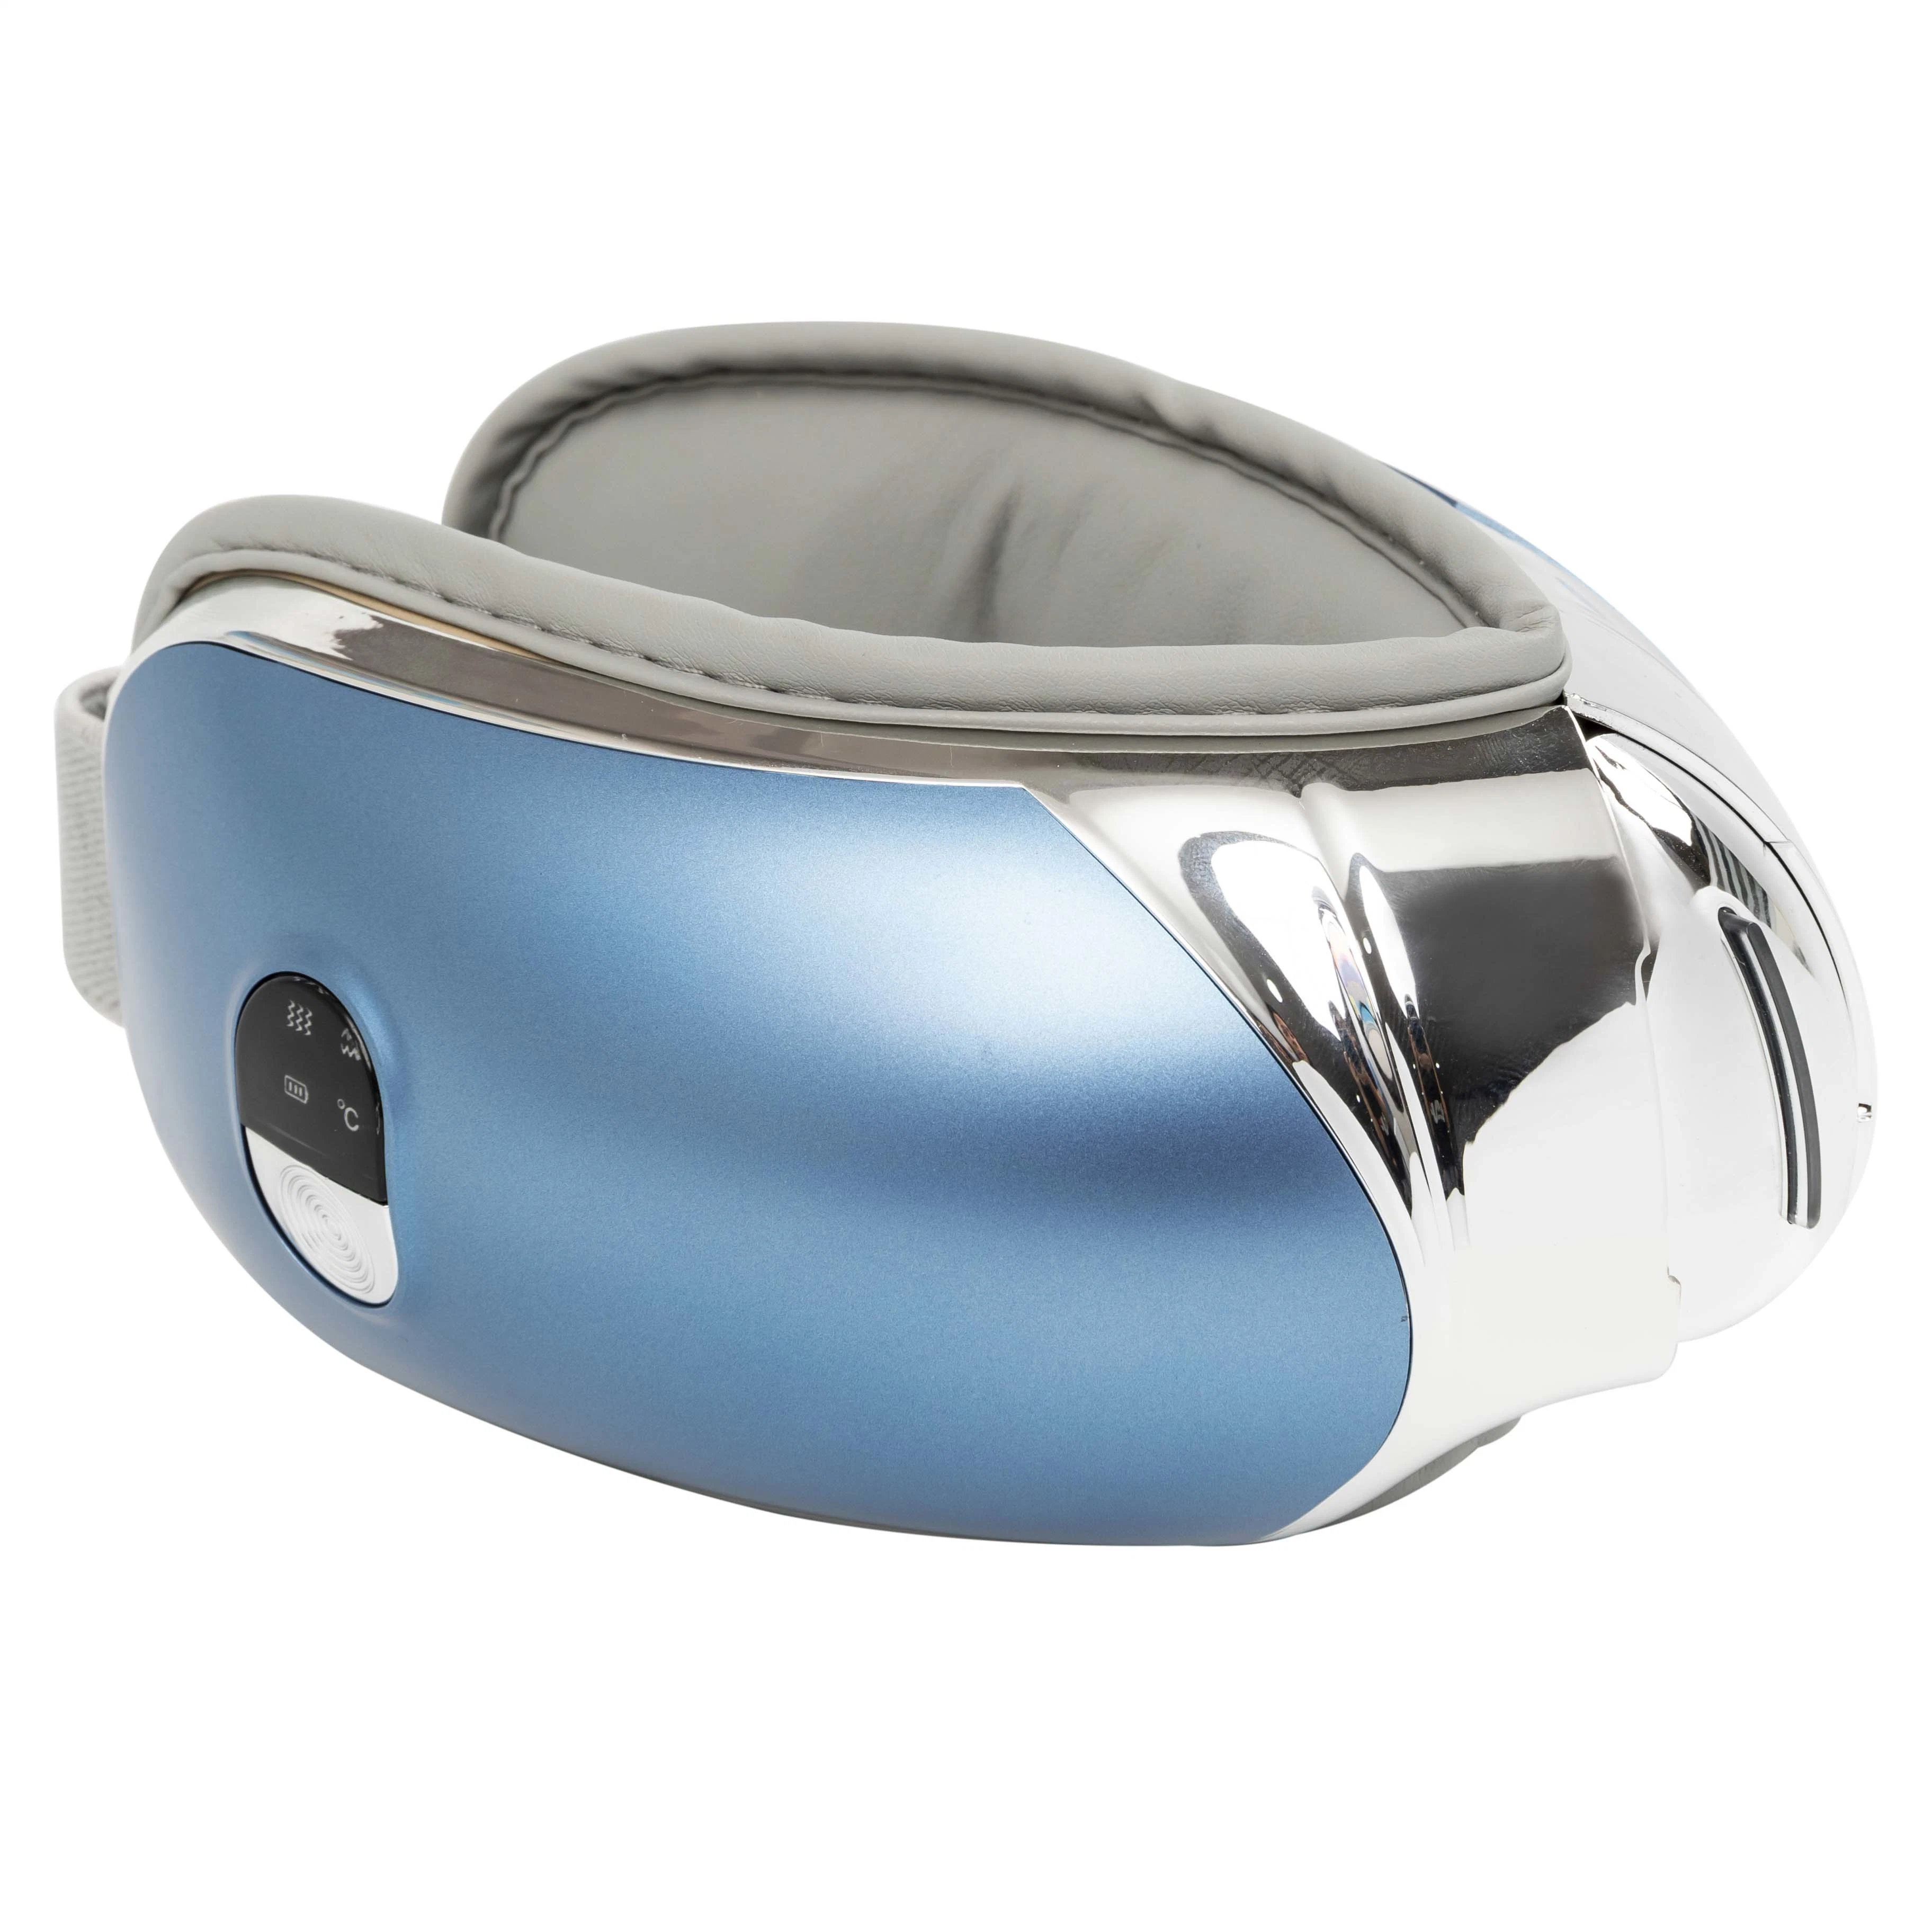 Горячая продажа карманных глубокую насадки для теста Shiatus глаз маска уход складные аккумулятор для глаз массажер с музыкальный плеер Bluetooth